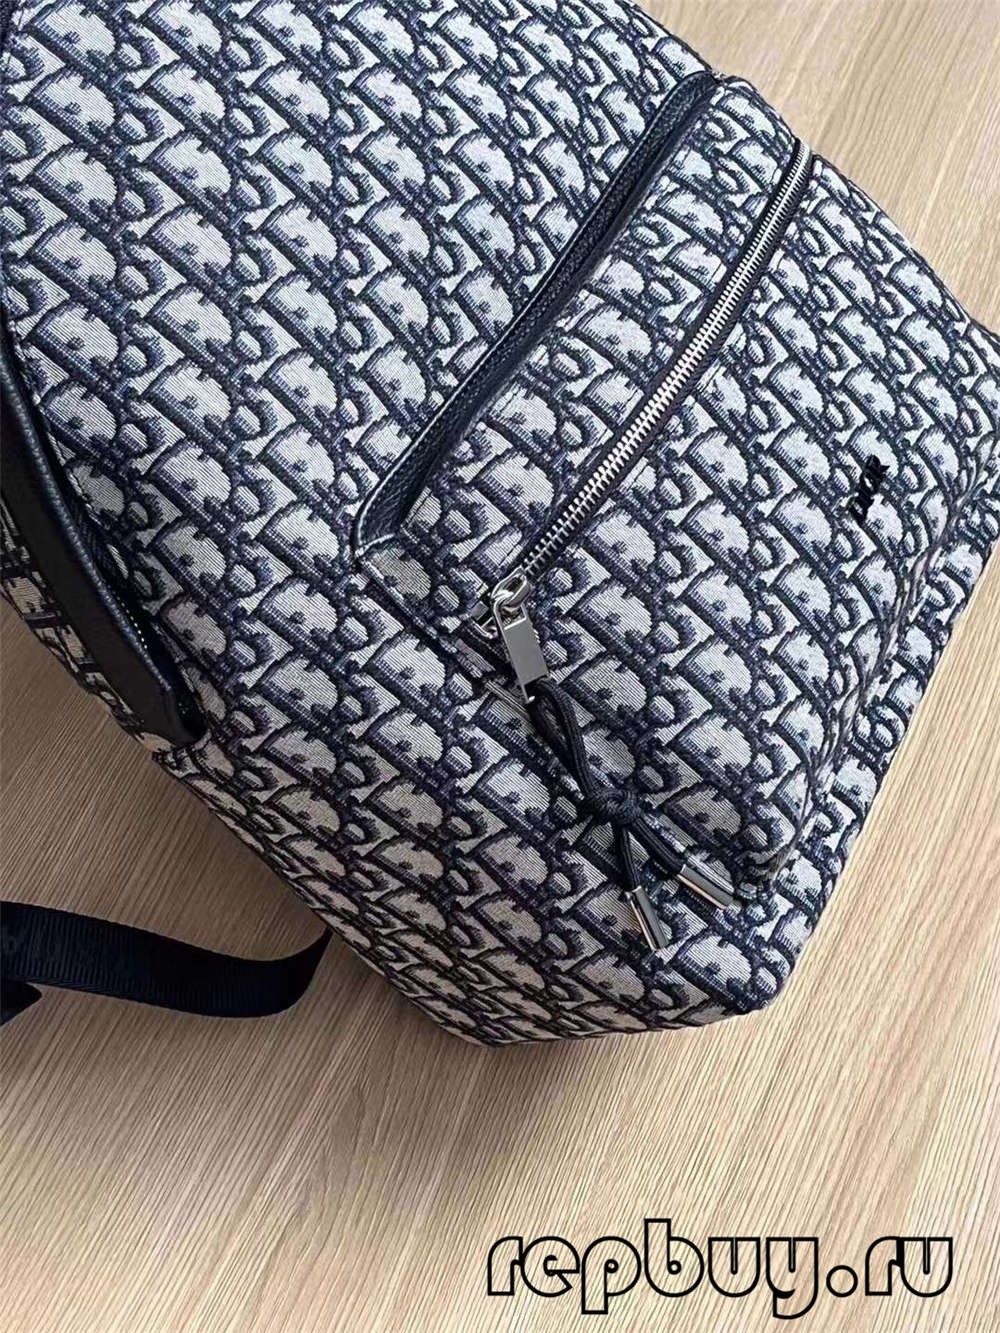 Dior blue embroidery Oblique print top replica duffel bag (2022 Edition)-Best Quality Fake designer Bag Review, Replica designer bag ru